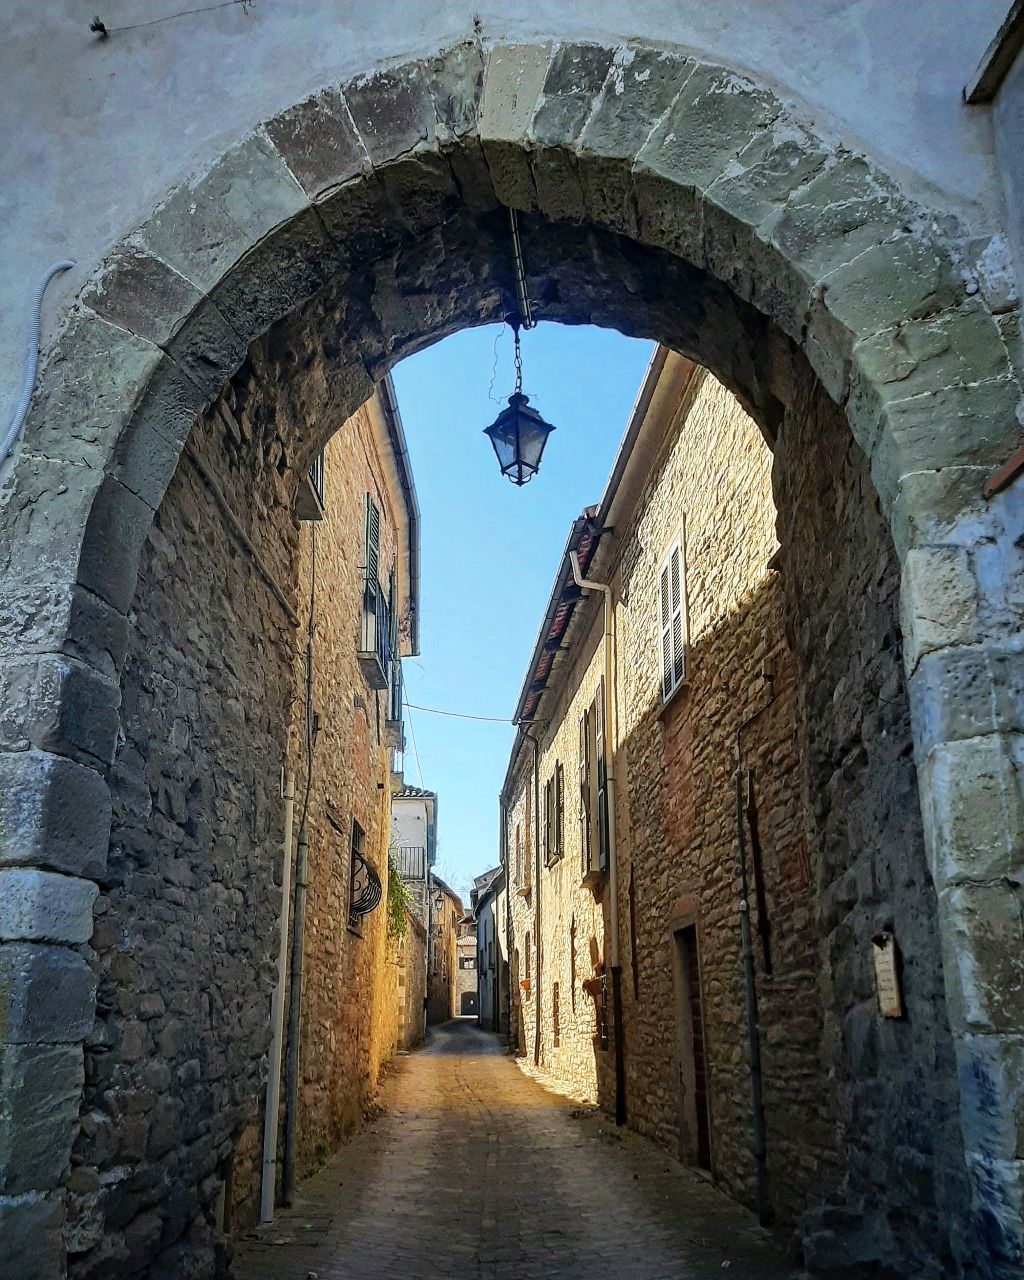 Borgo di Mombaldone - Italy